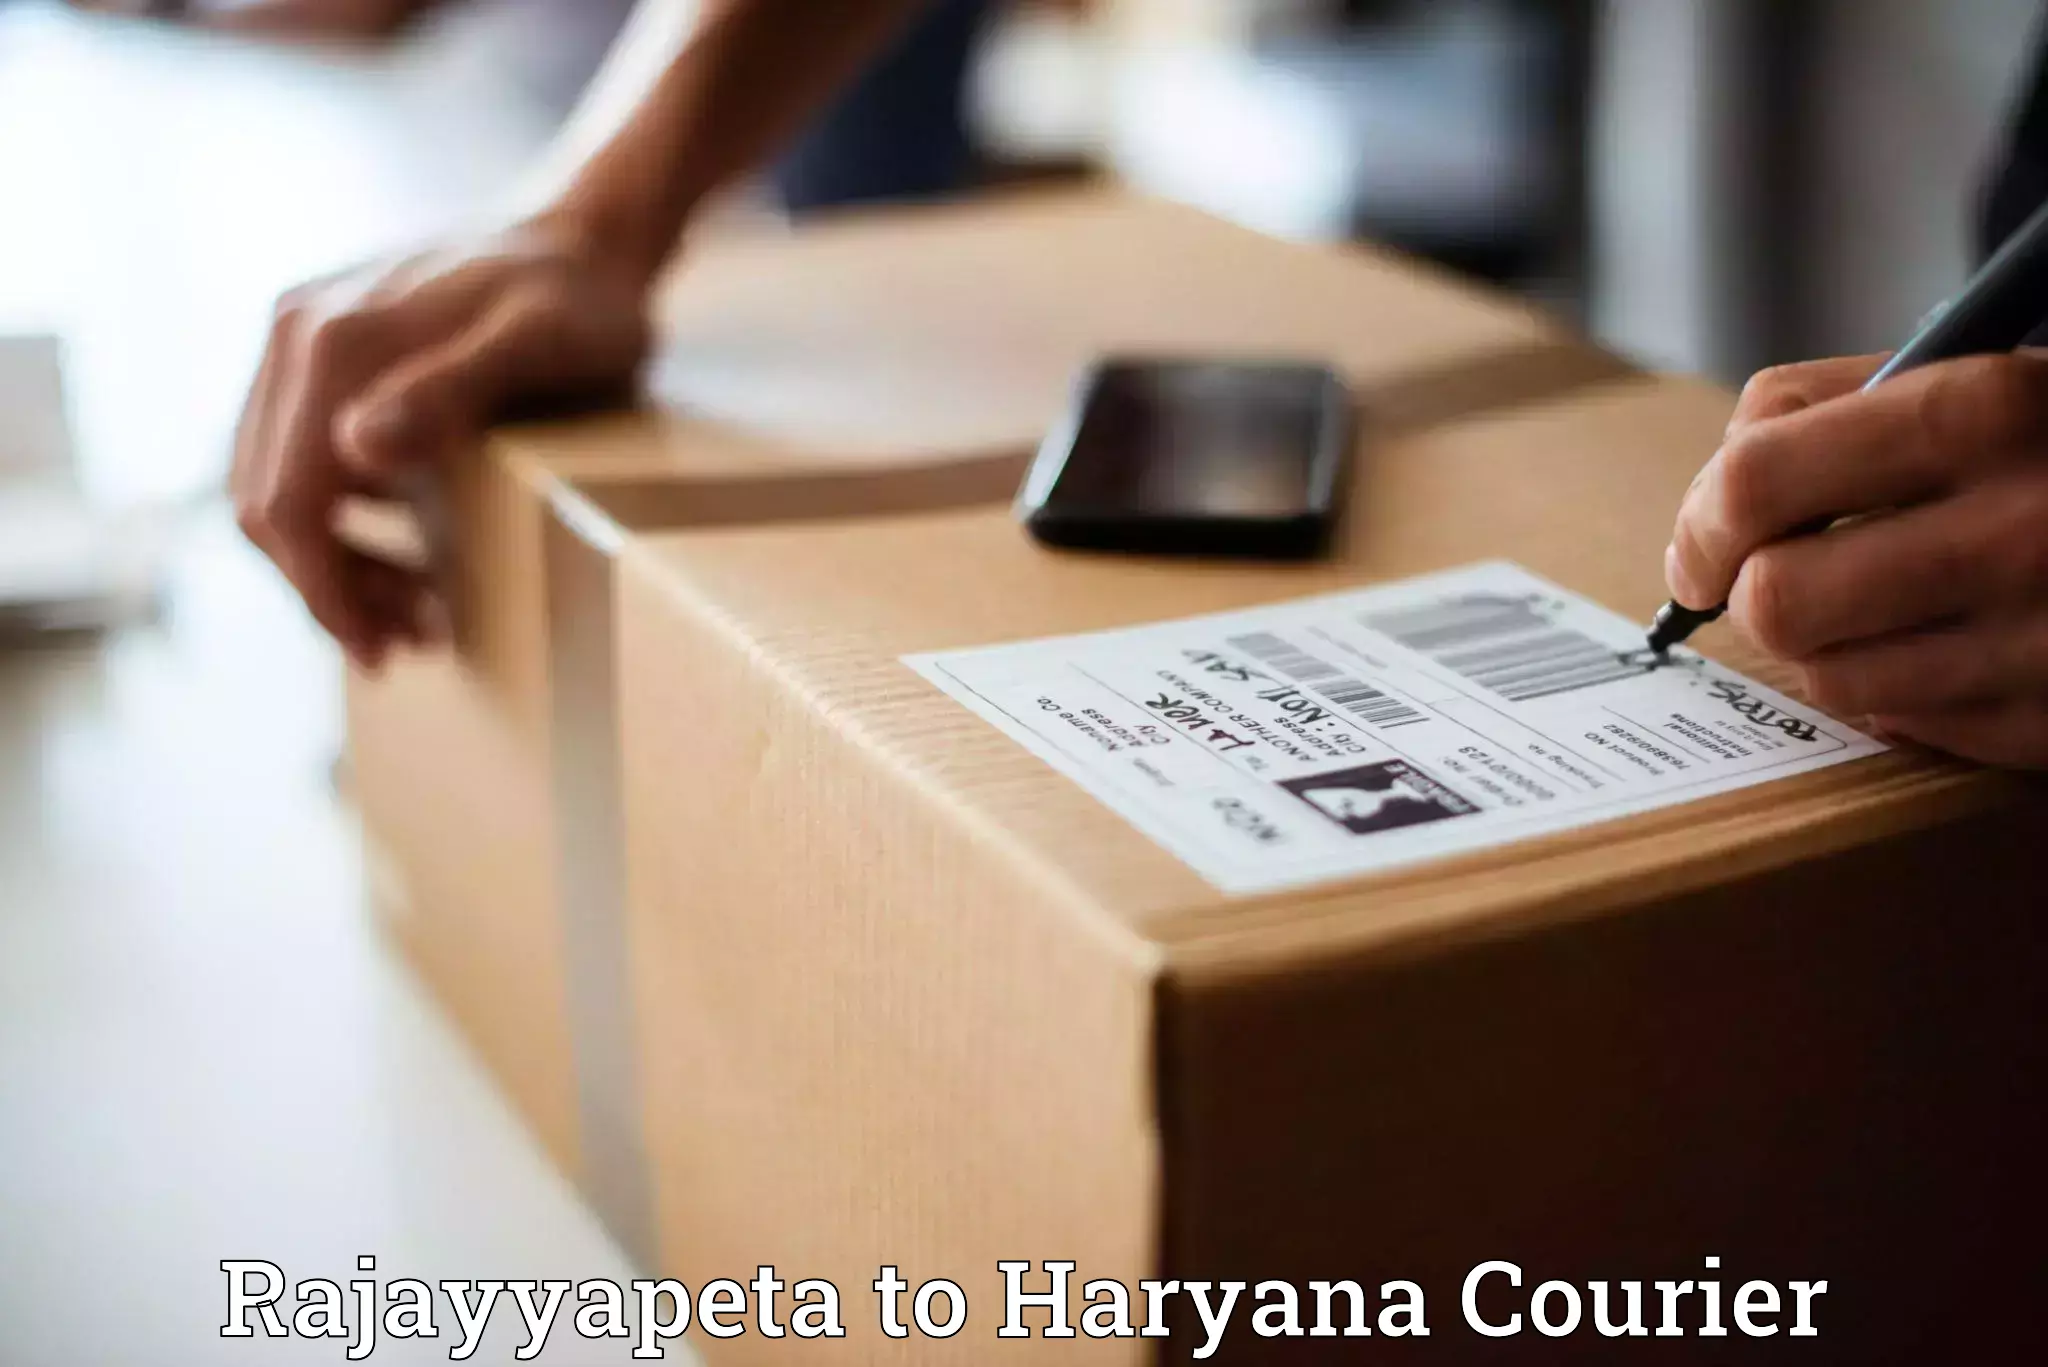 Same-day delivery solutions Rajayyapeta to NCR Haryana